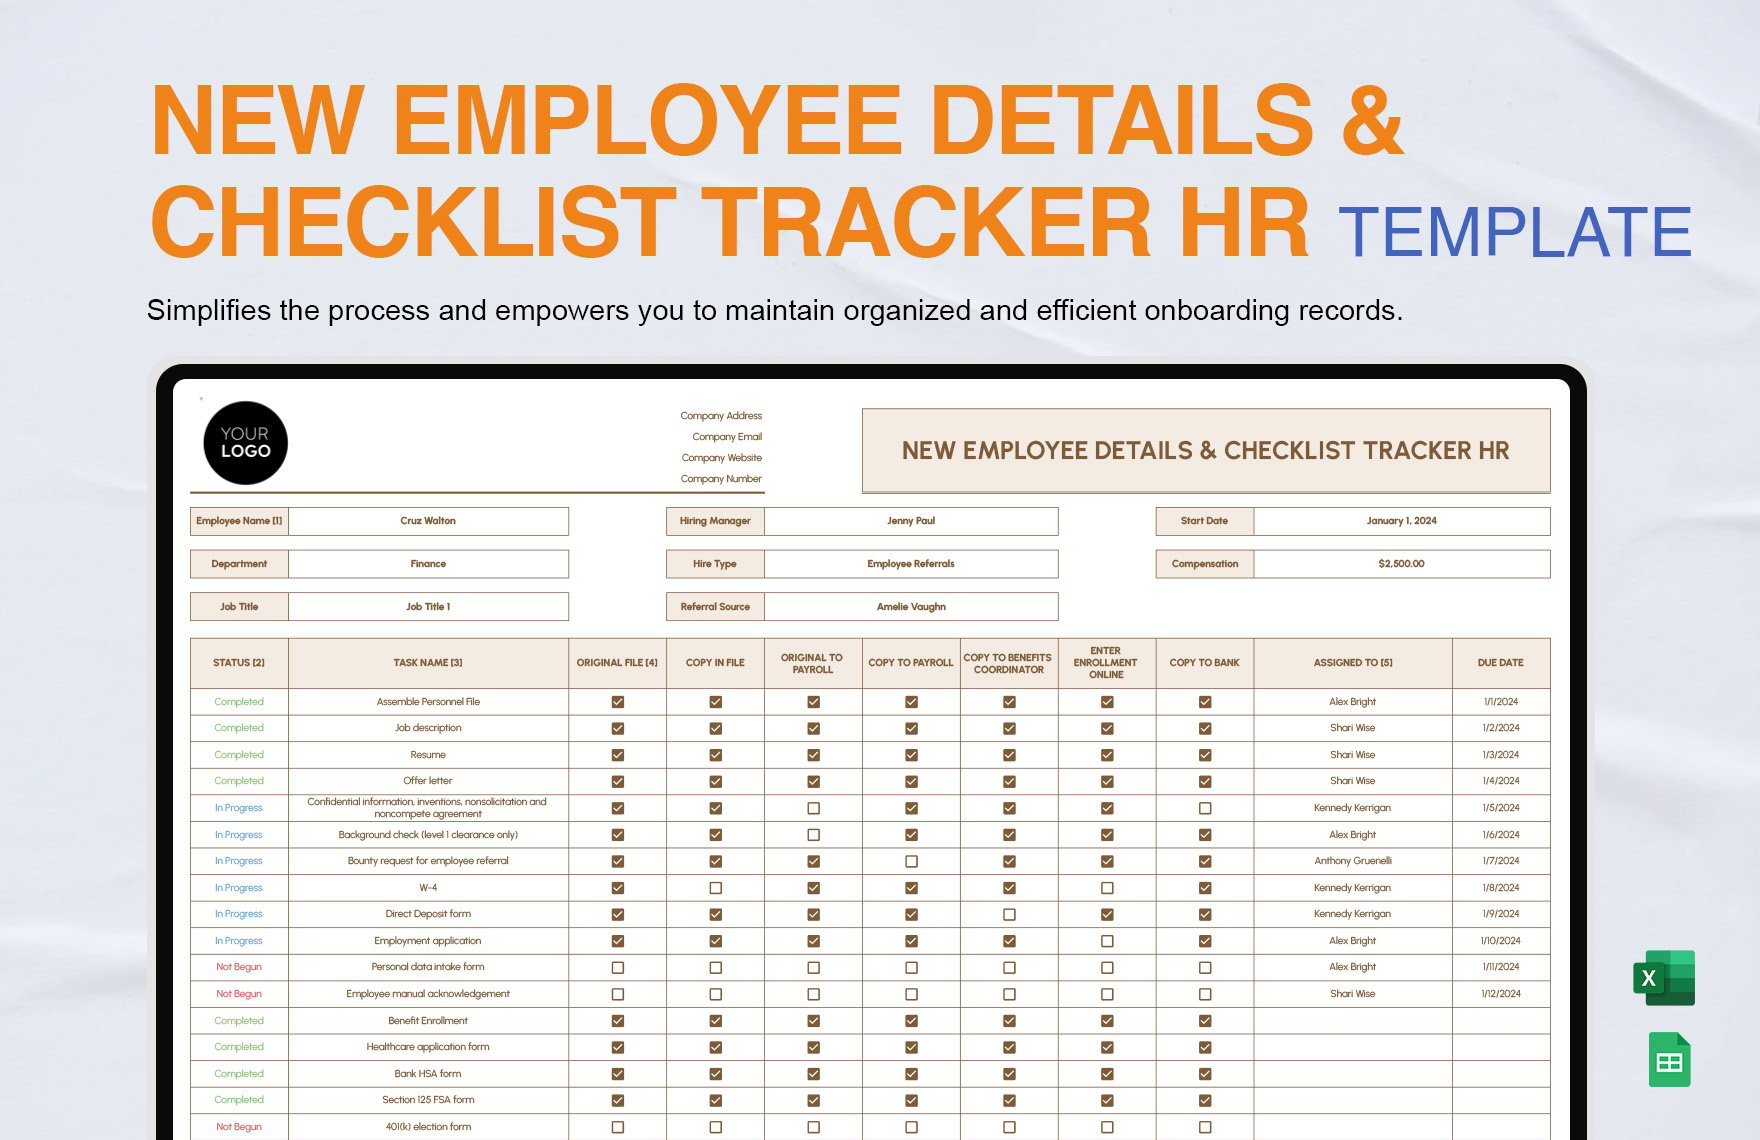 New Employee Details & Checklist Tracker HR Template